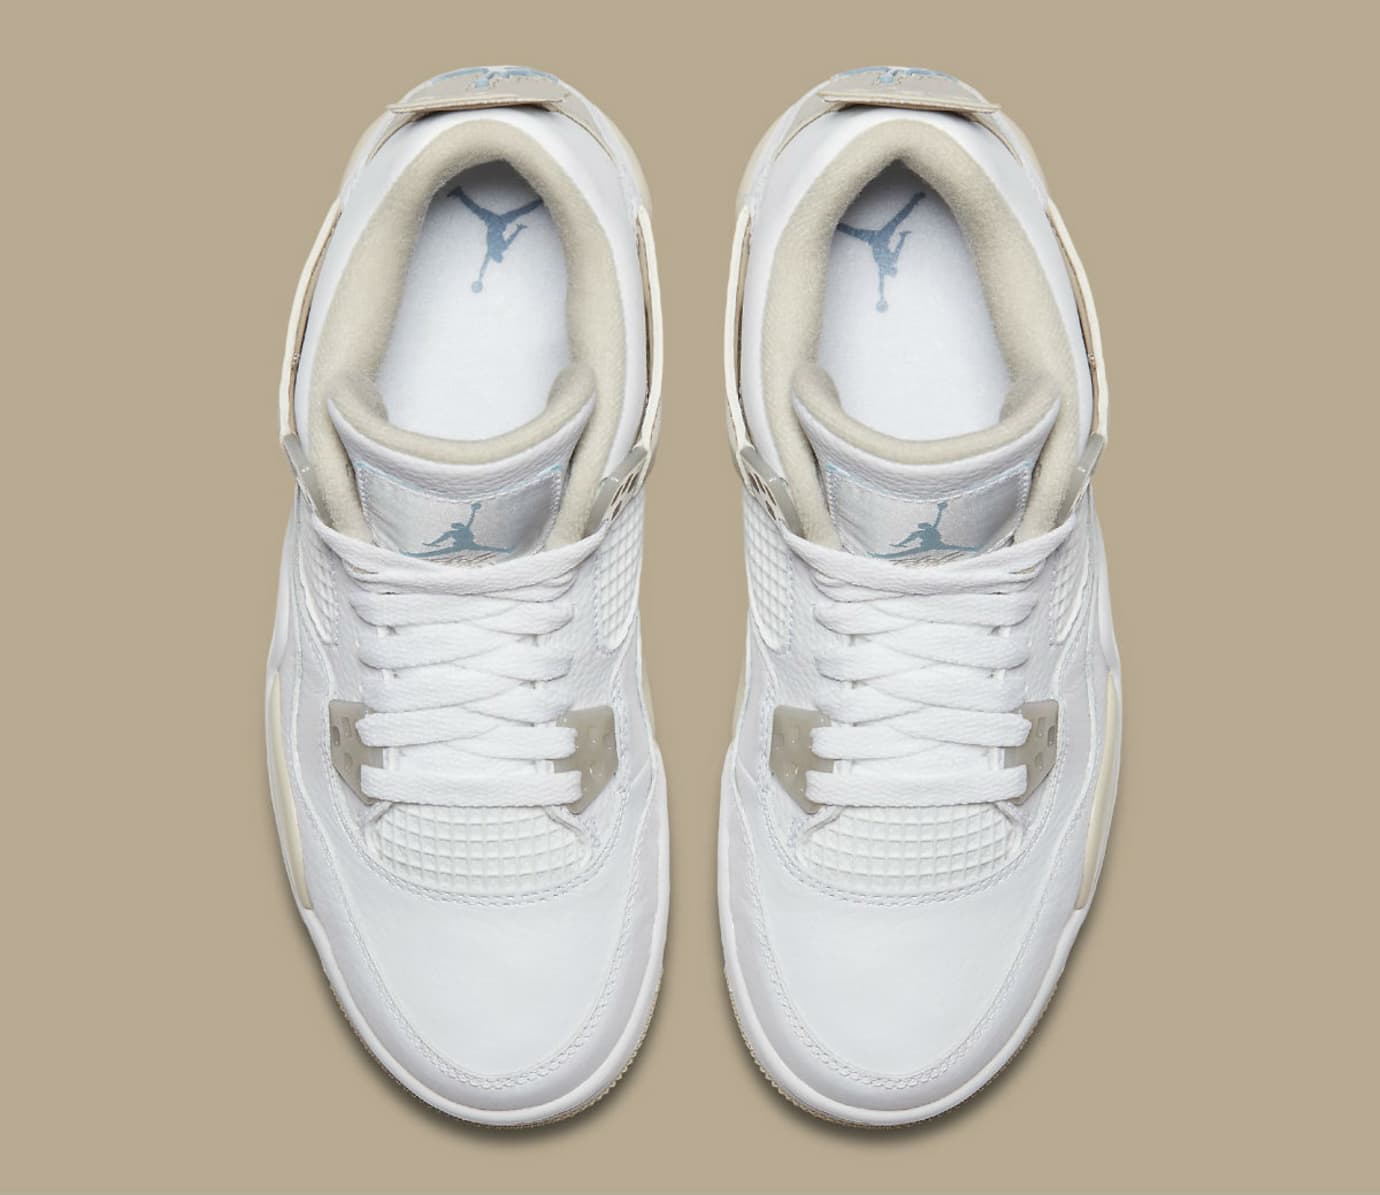 Air Jordan 4 Girls Linen Release Date 487724-118 | Sole Collector